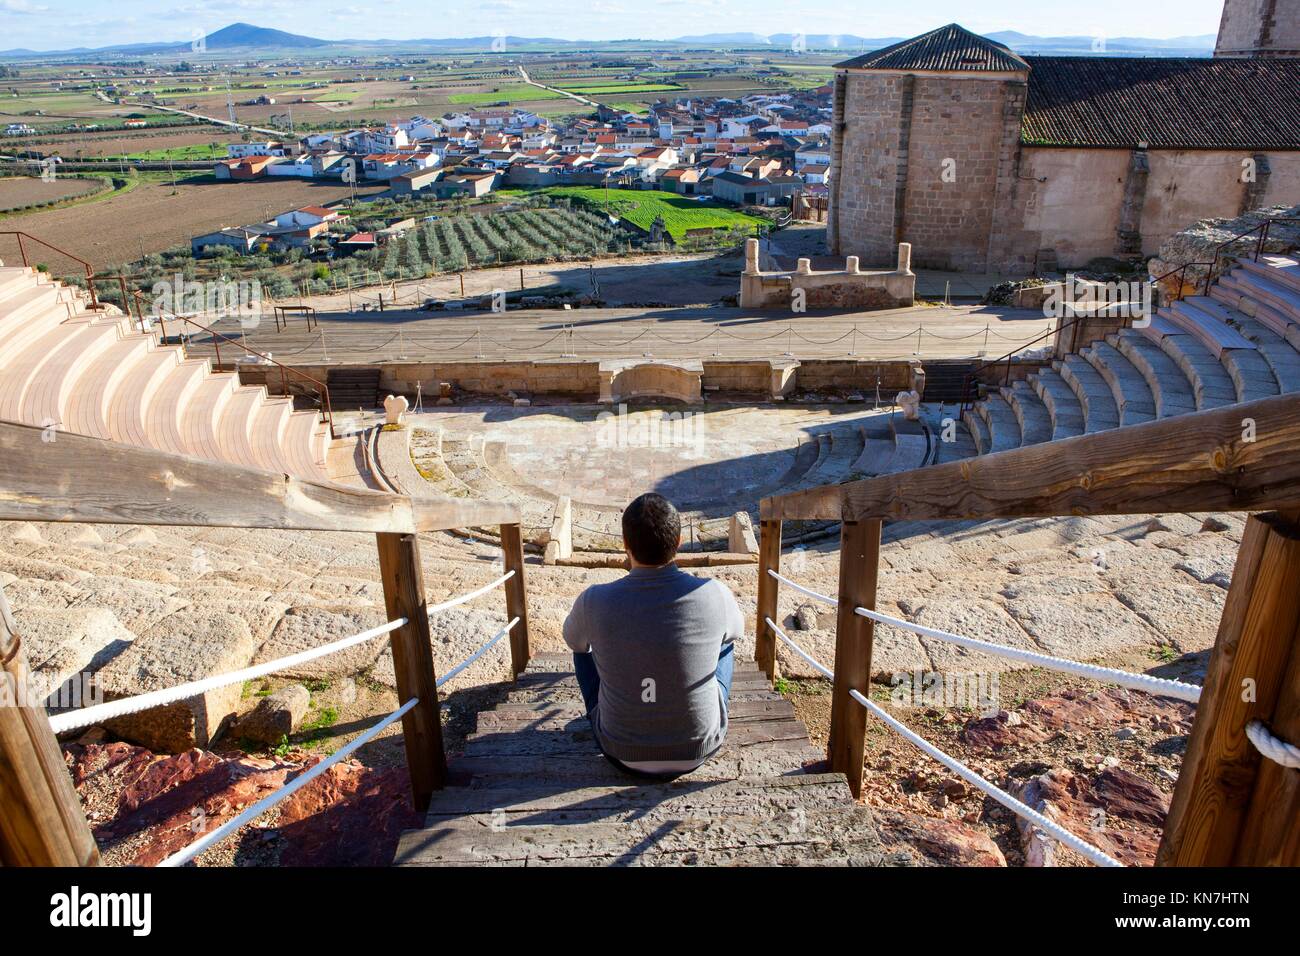 Turisti in visita al teatro romano di Medellin, Spagna. Egli è seduto sul grandstand godendo di una magnifica vista. Foto Stock